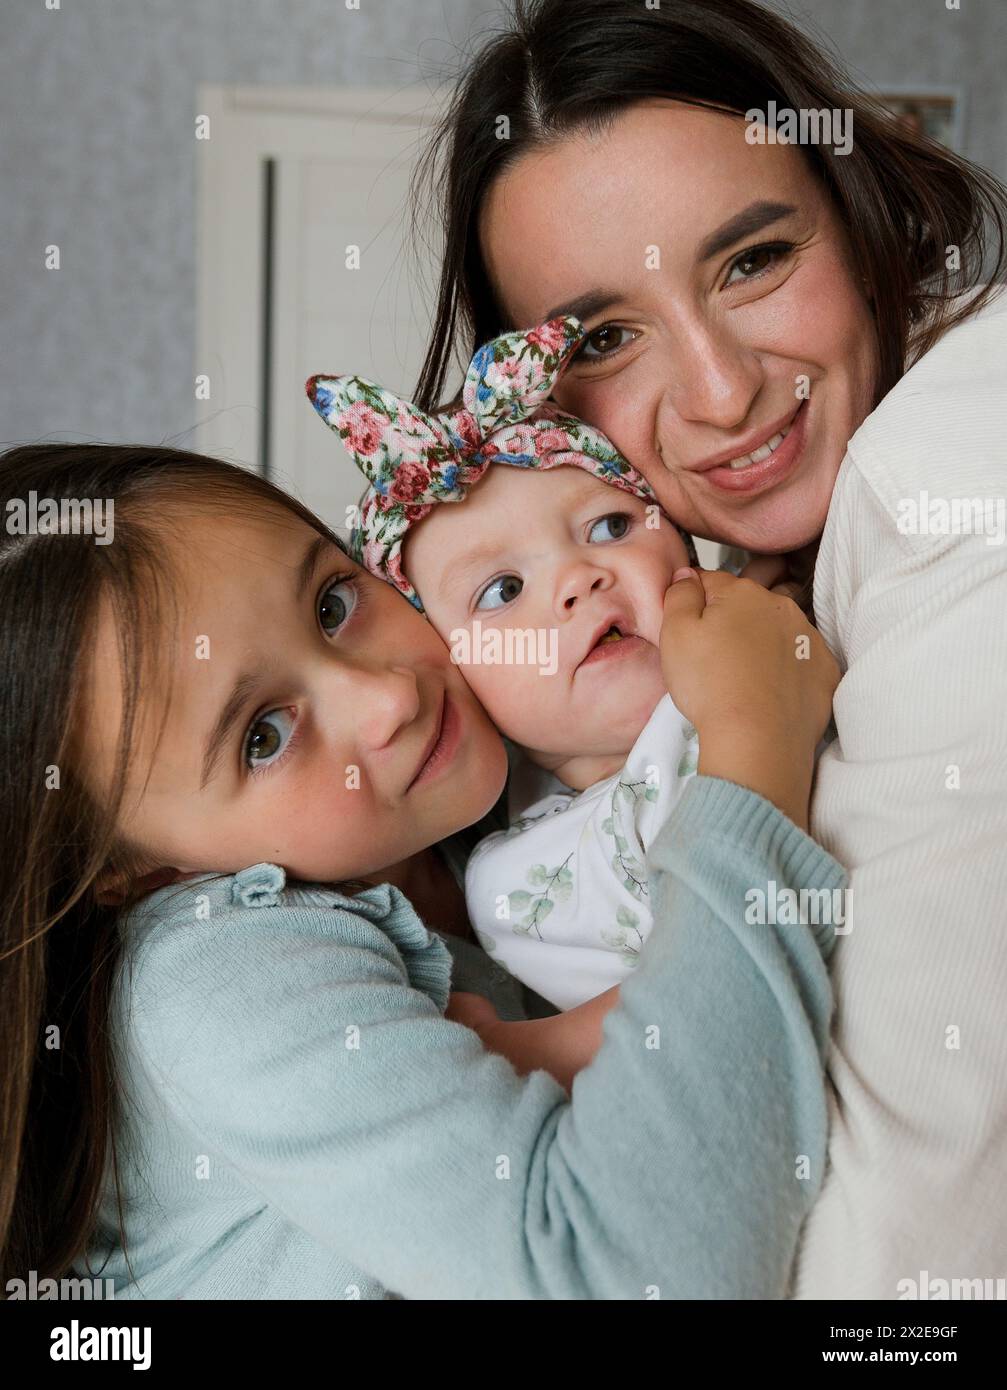 Une famille aimante heureuse mère et ses petites filles câlins Banque D'Images